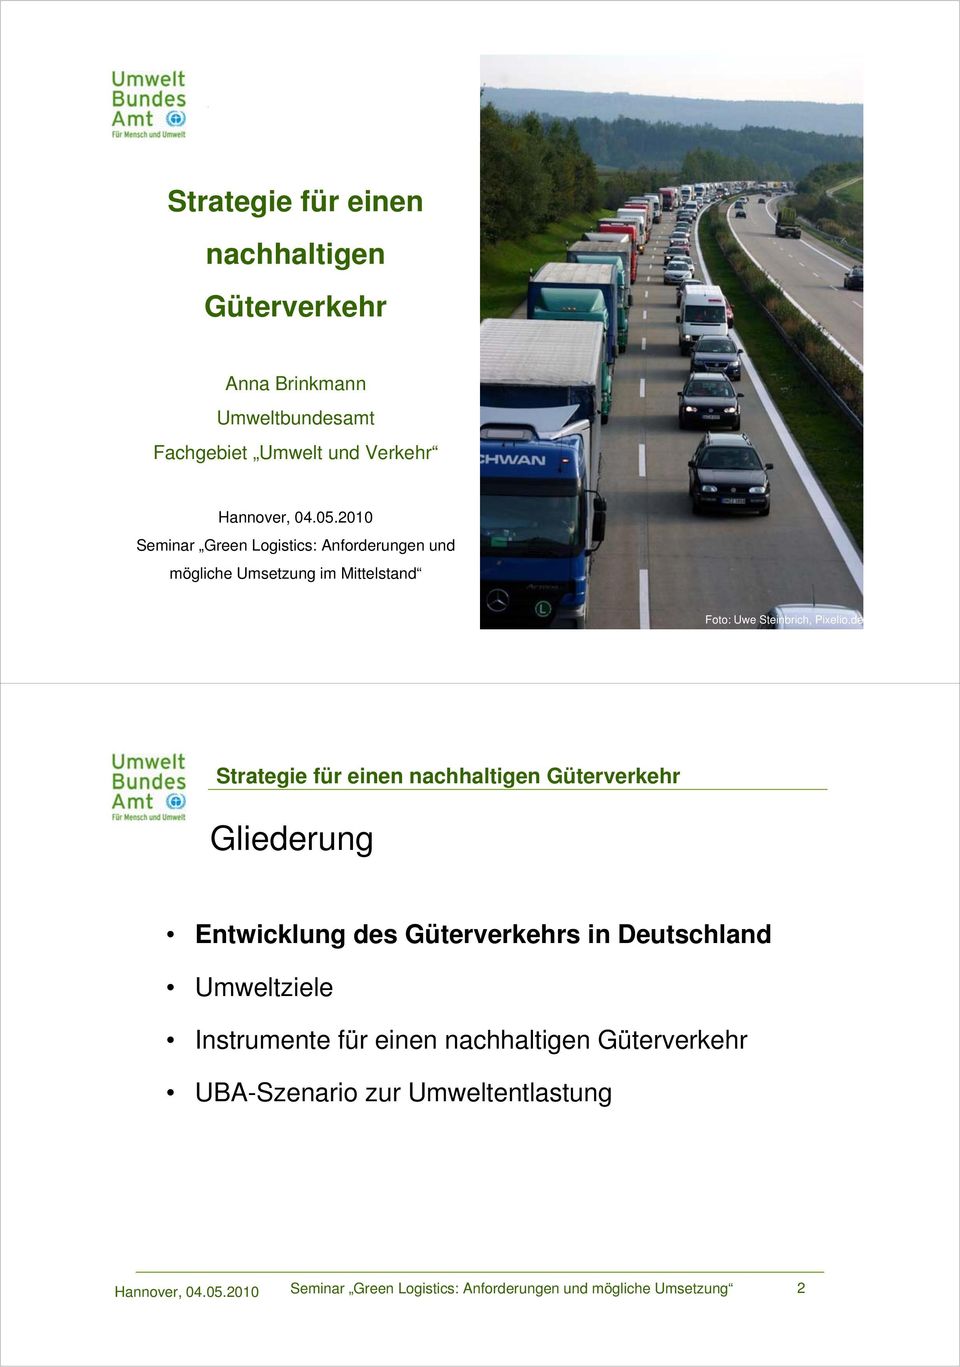 2010 Seminar Green Logistics: Anforderungen und mögliche Umsetzung 1 von 23 Foto: Uwe Steinbrich, Pixelio.